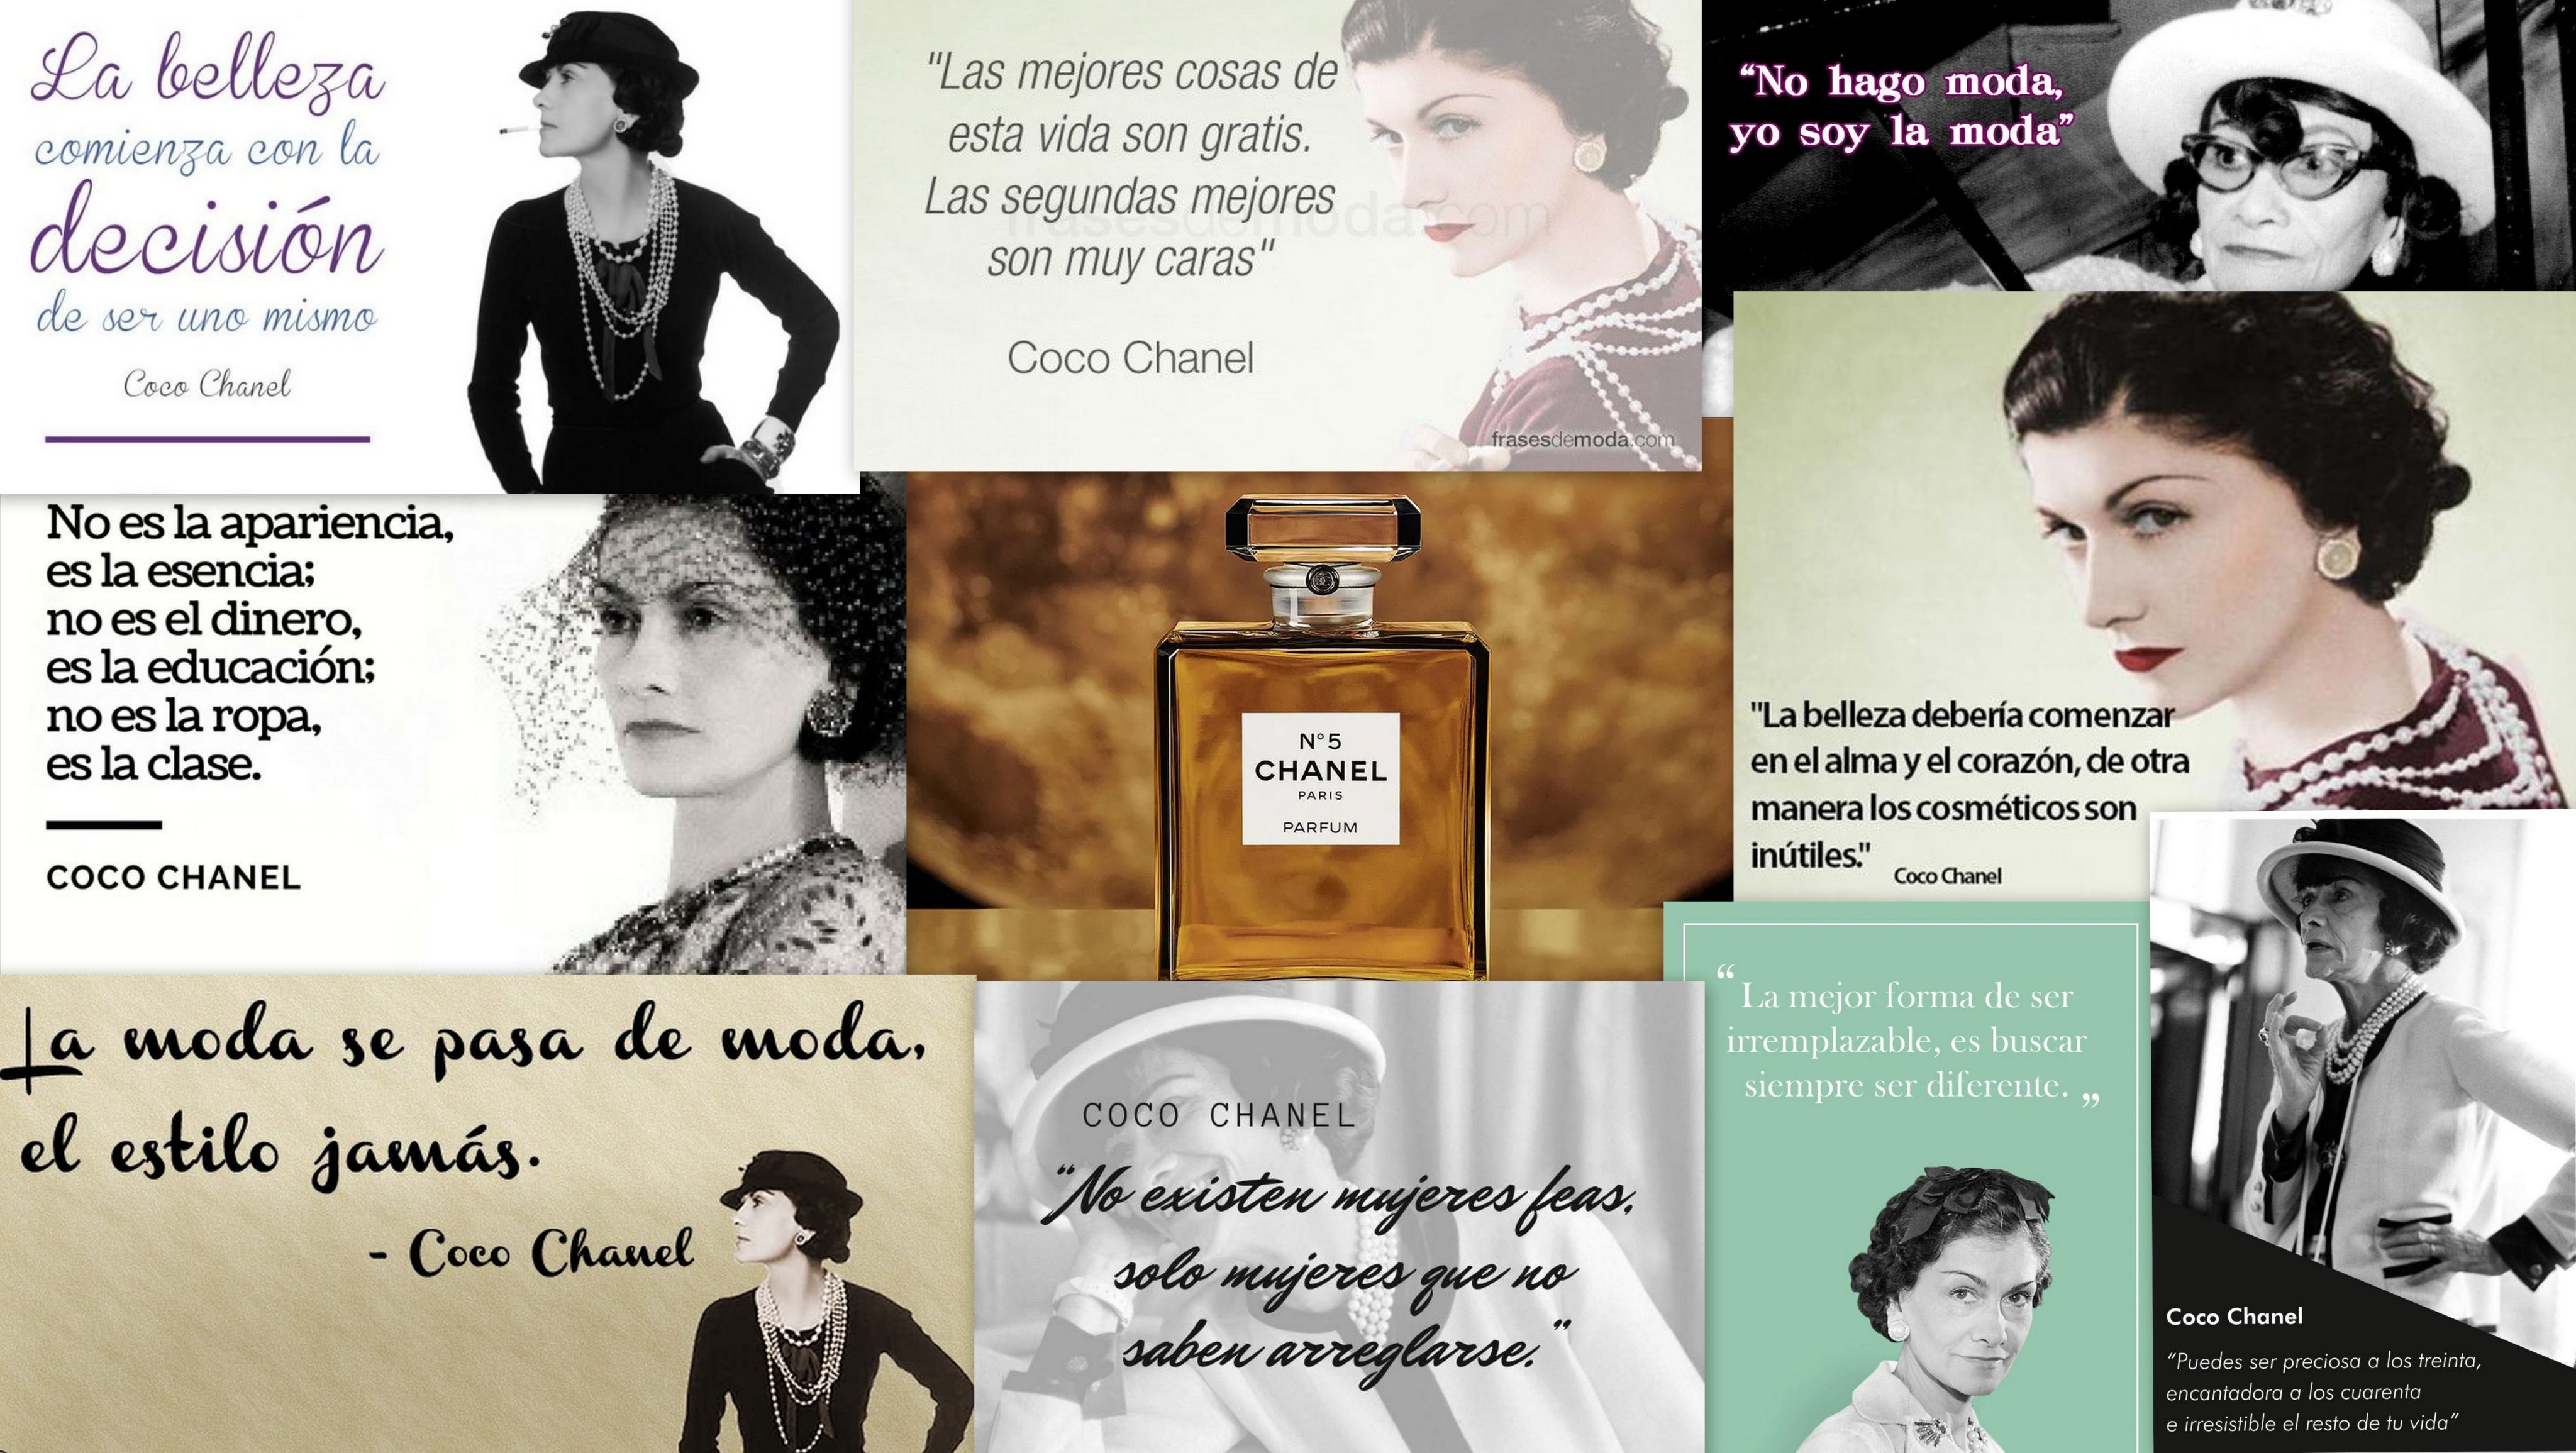 Santiago Heras on X: Coco Chanel (1883-1971): No hago moda, yo soy la  moda. La moda pasa, pero el estilo permanece. “Si naciste sin alas, no  hagas nada para evitar que crezcan”. “